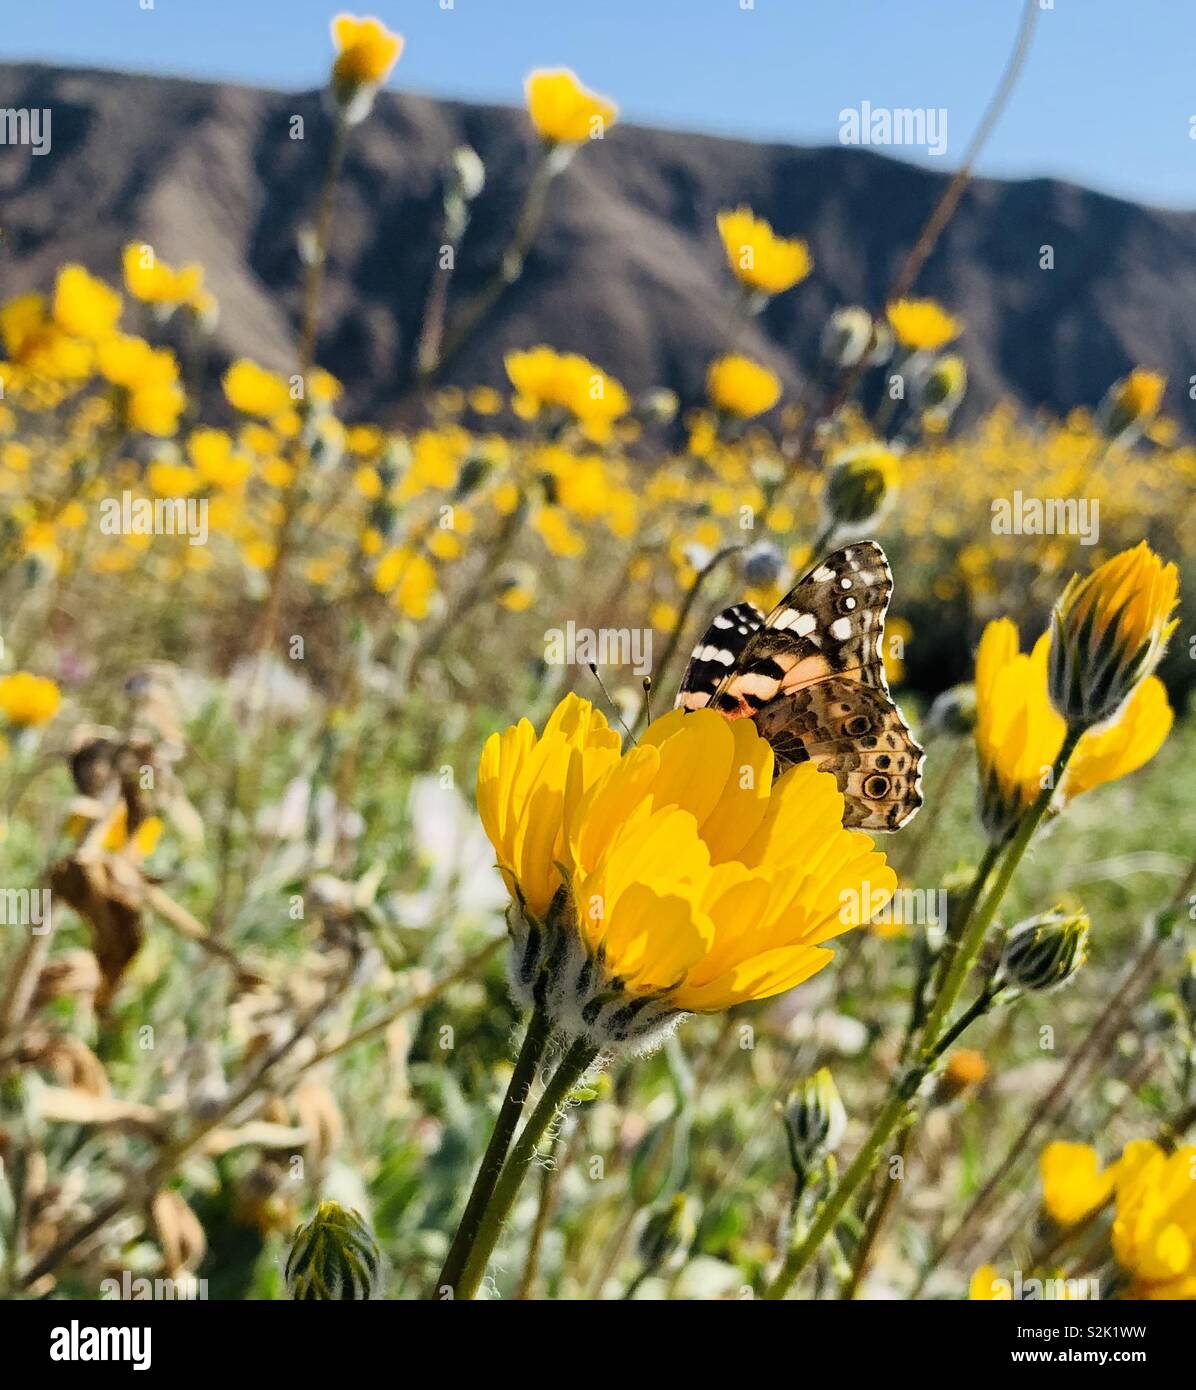 Un dipinto di Lady butterfly poggia su un fiore giallo durante la superbloom nel deserto della California.sm Foto Stock